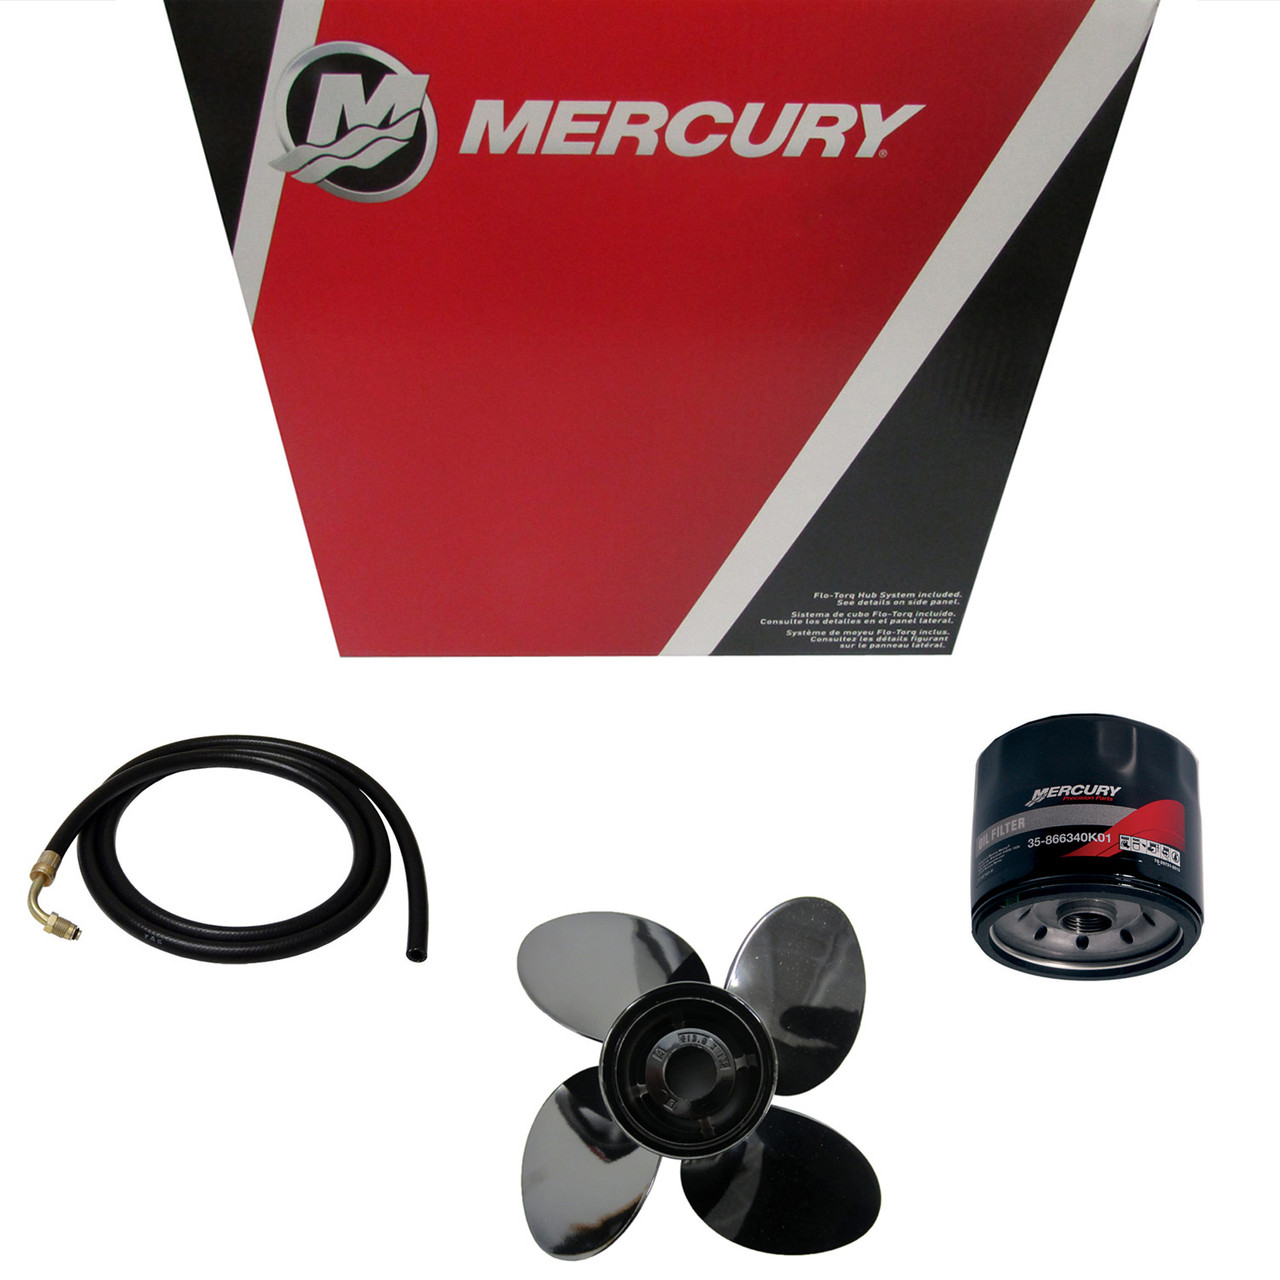 Mercury Marine / Mercruiser New OEM Impeller, 47-855708T40